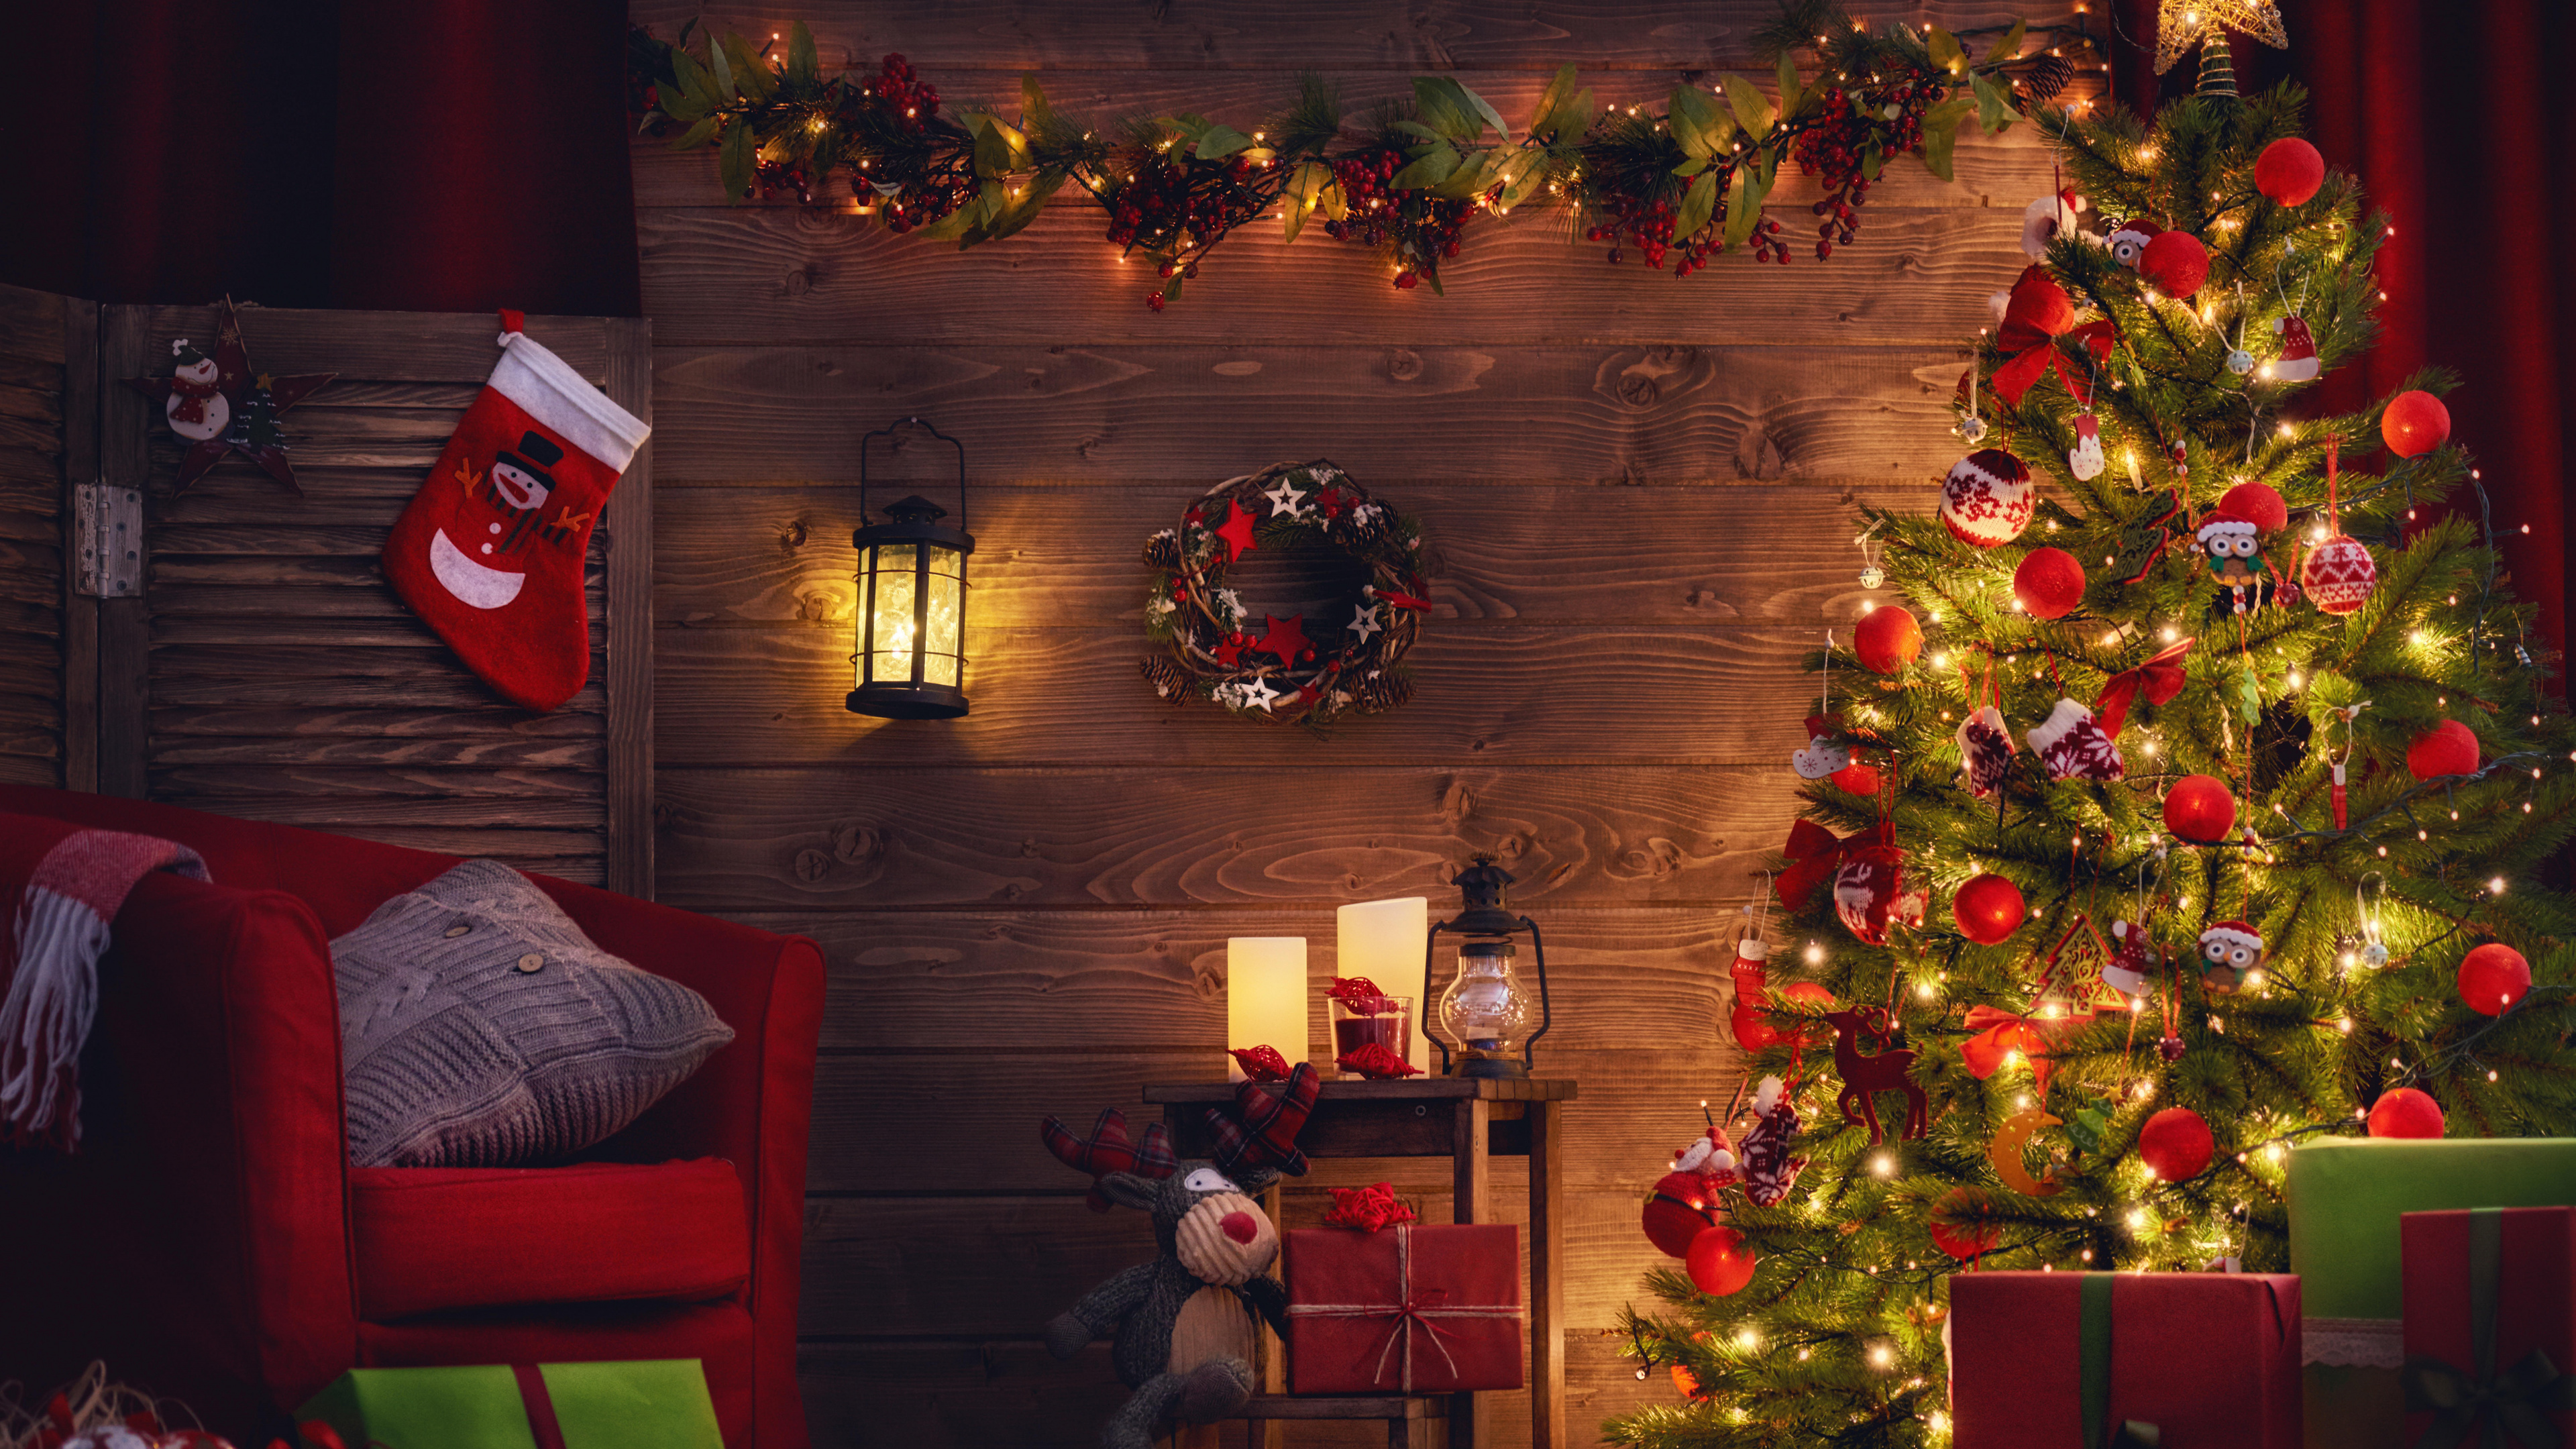 Weihnachtsbaum, Weihnachten, Weihnachtsdekoration, Weihnachtsbeleuchtung, Hölzerner Weihnachts-Adventskalender. Wallpaper in 3840x2160 Resolution